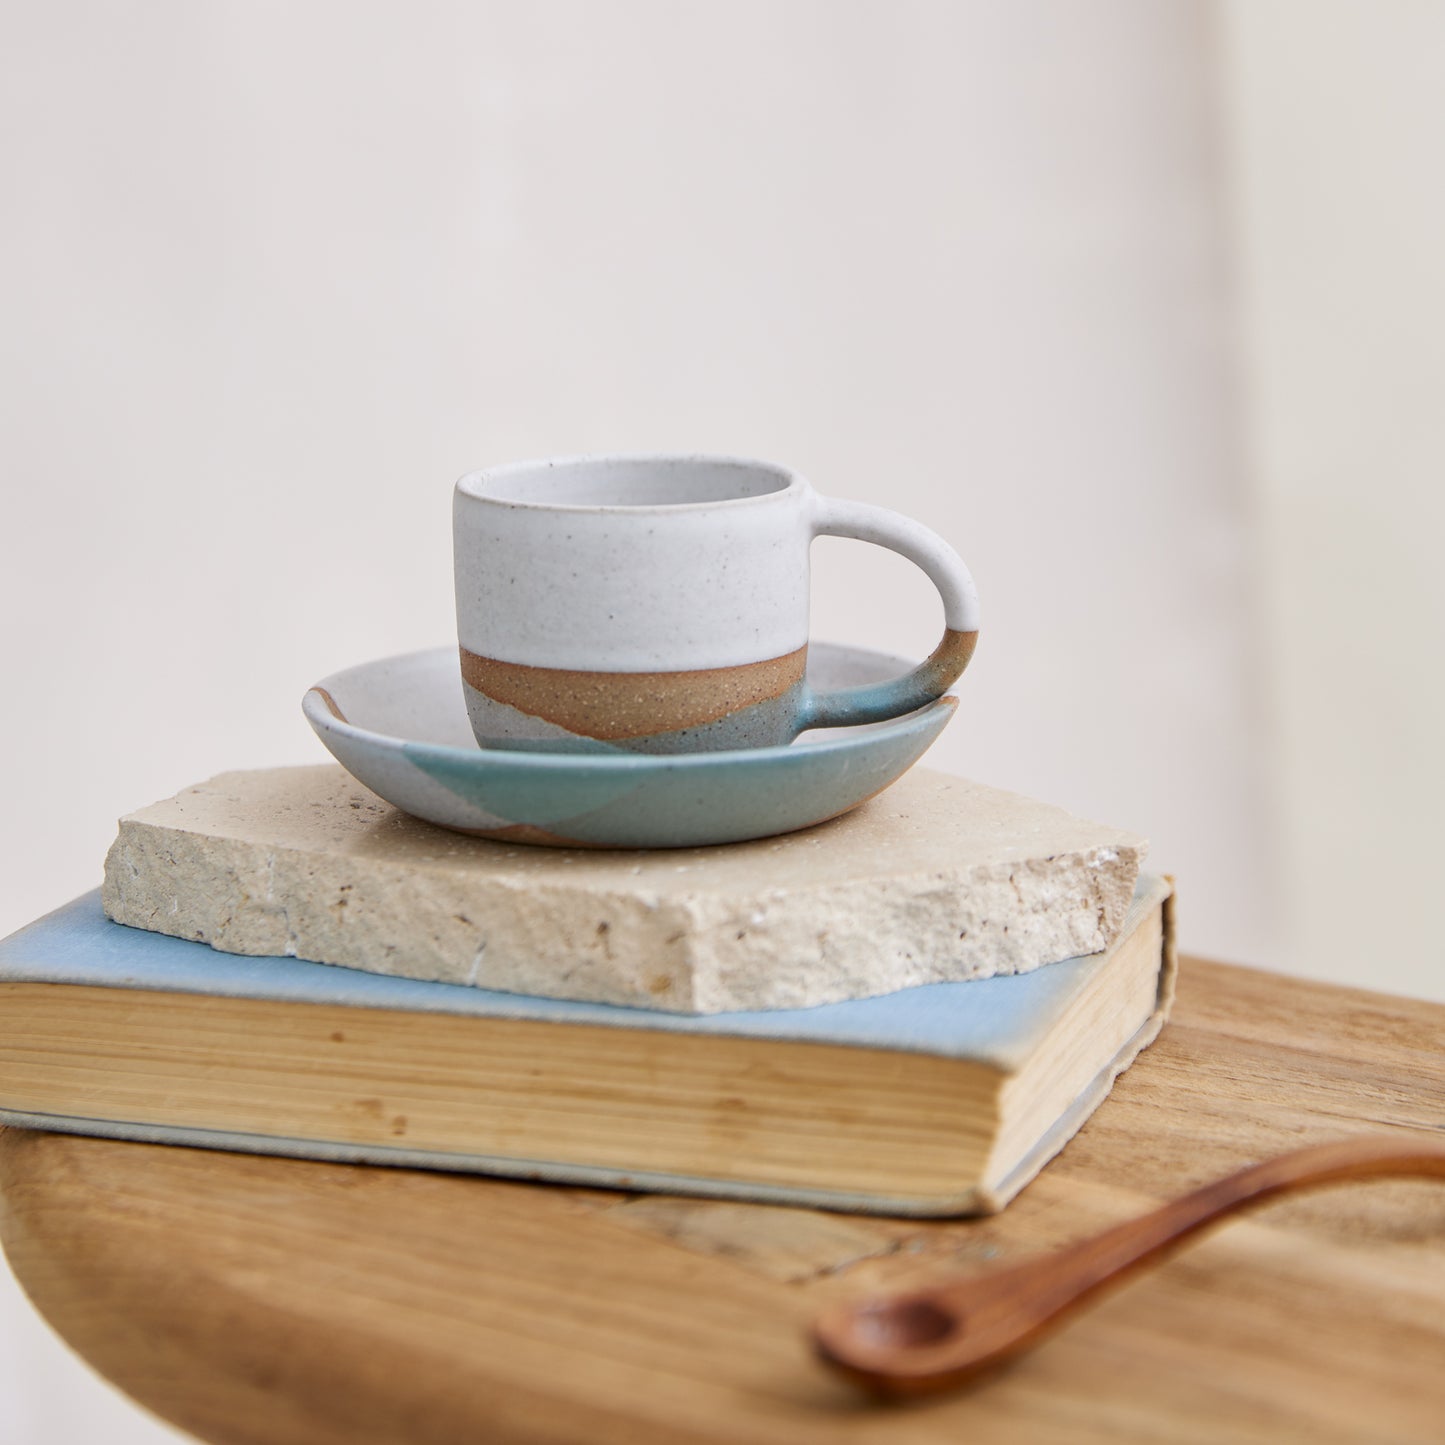 Tidal Handmade Ceramic Espresso Mug - Green and Grey